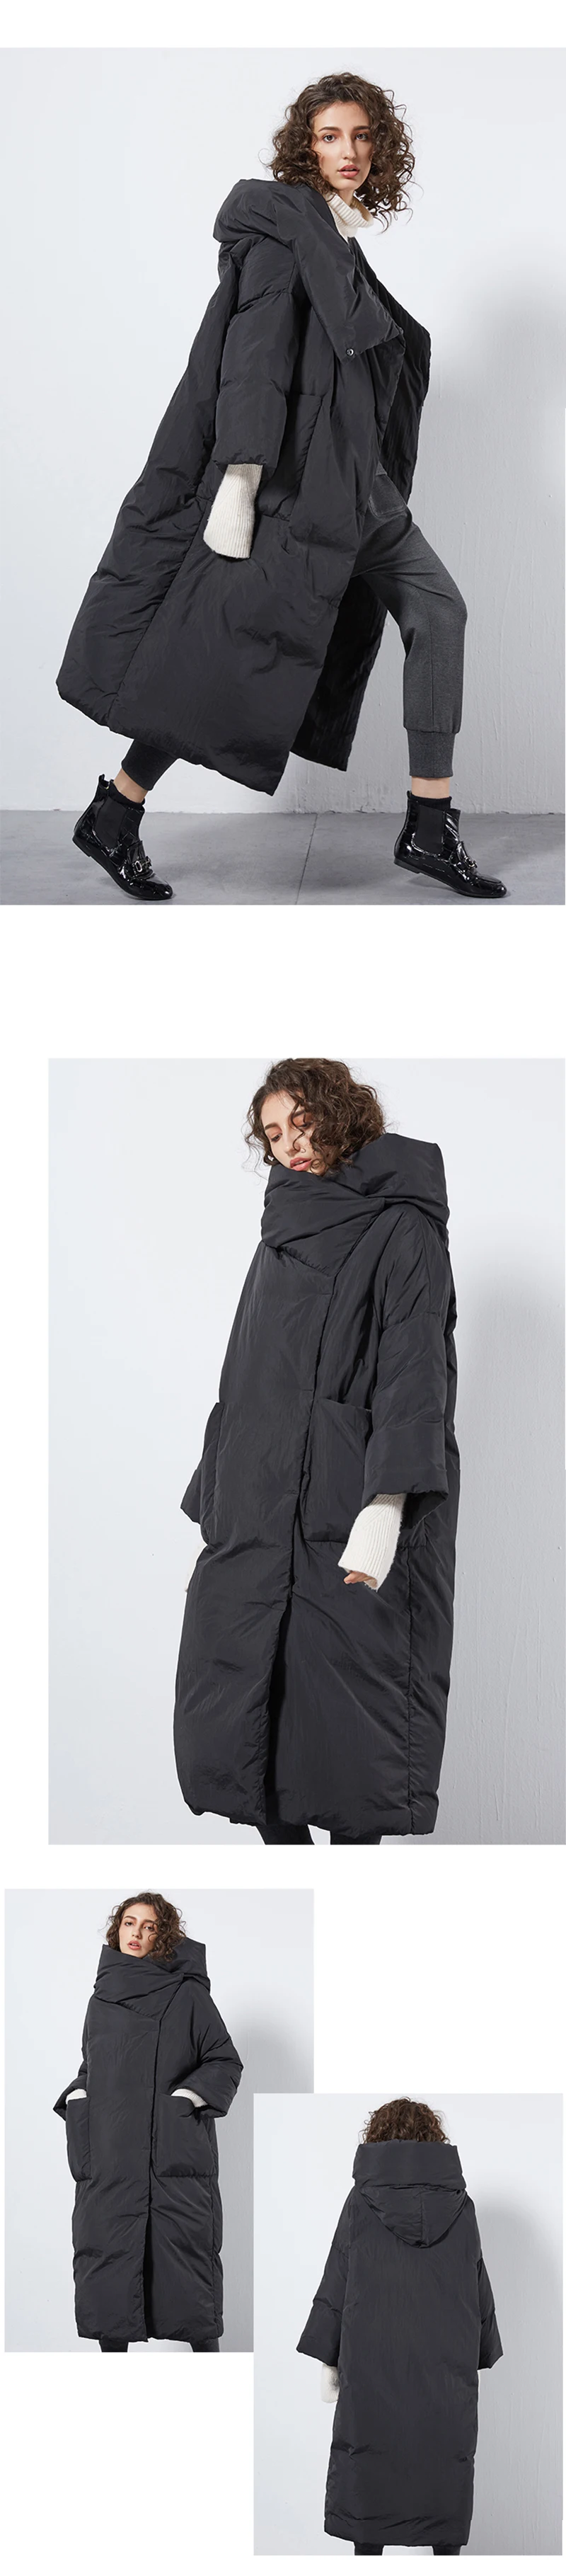 JOJX удлиненная куртка женская зимняя свободная Модная парка с капюшоном стеганая уличная куртка элегантное однотонное однобортное пальто